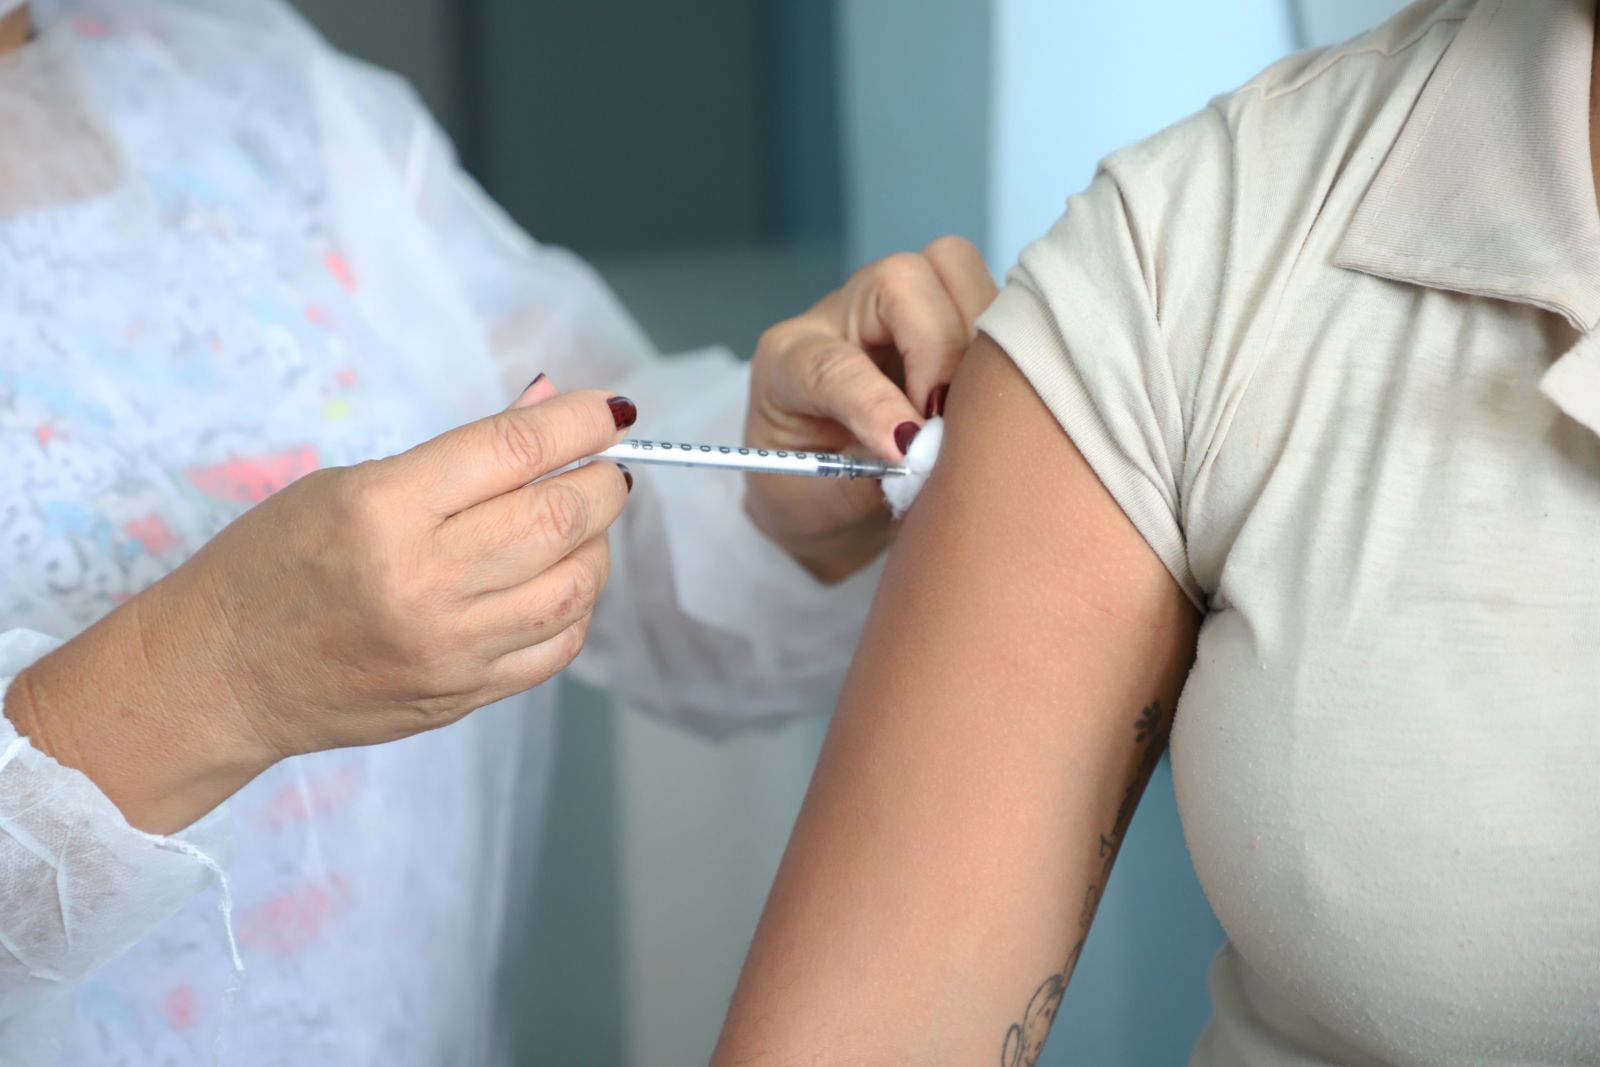 SEM ESTOQUE: Prefeitura não tem mais doses da vacina da gripe e encerra campanha em Porto Velho